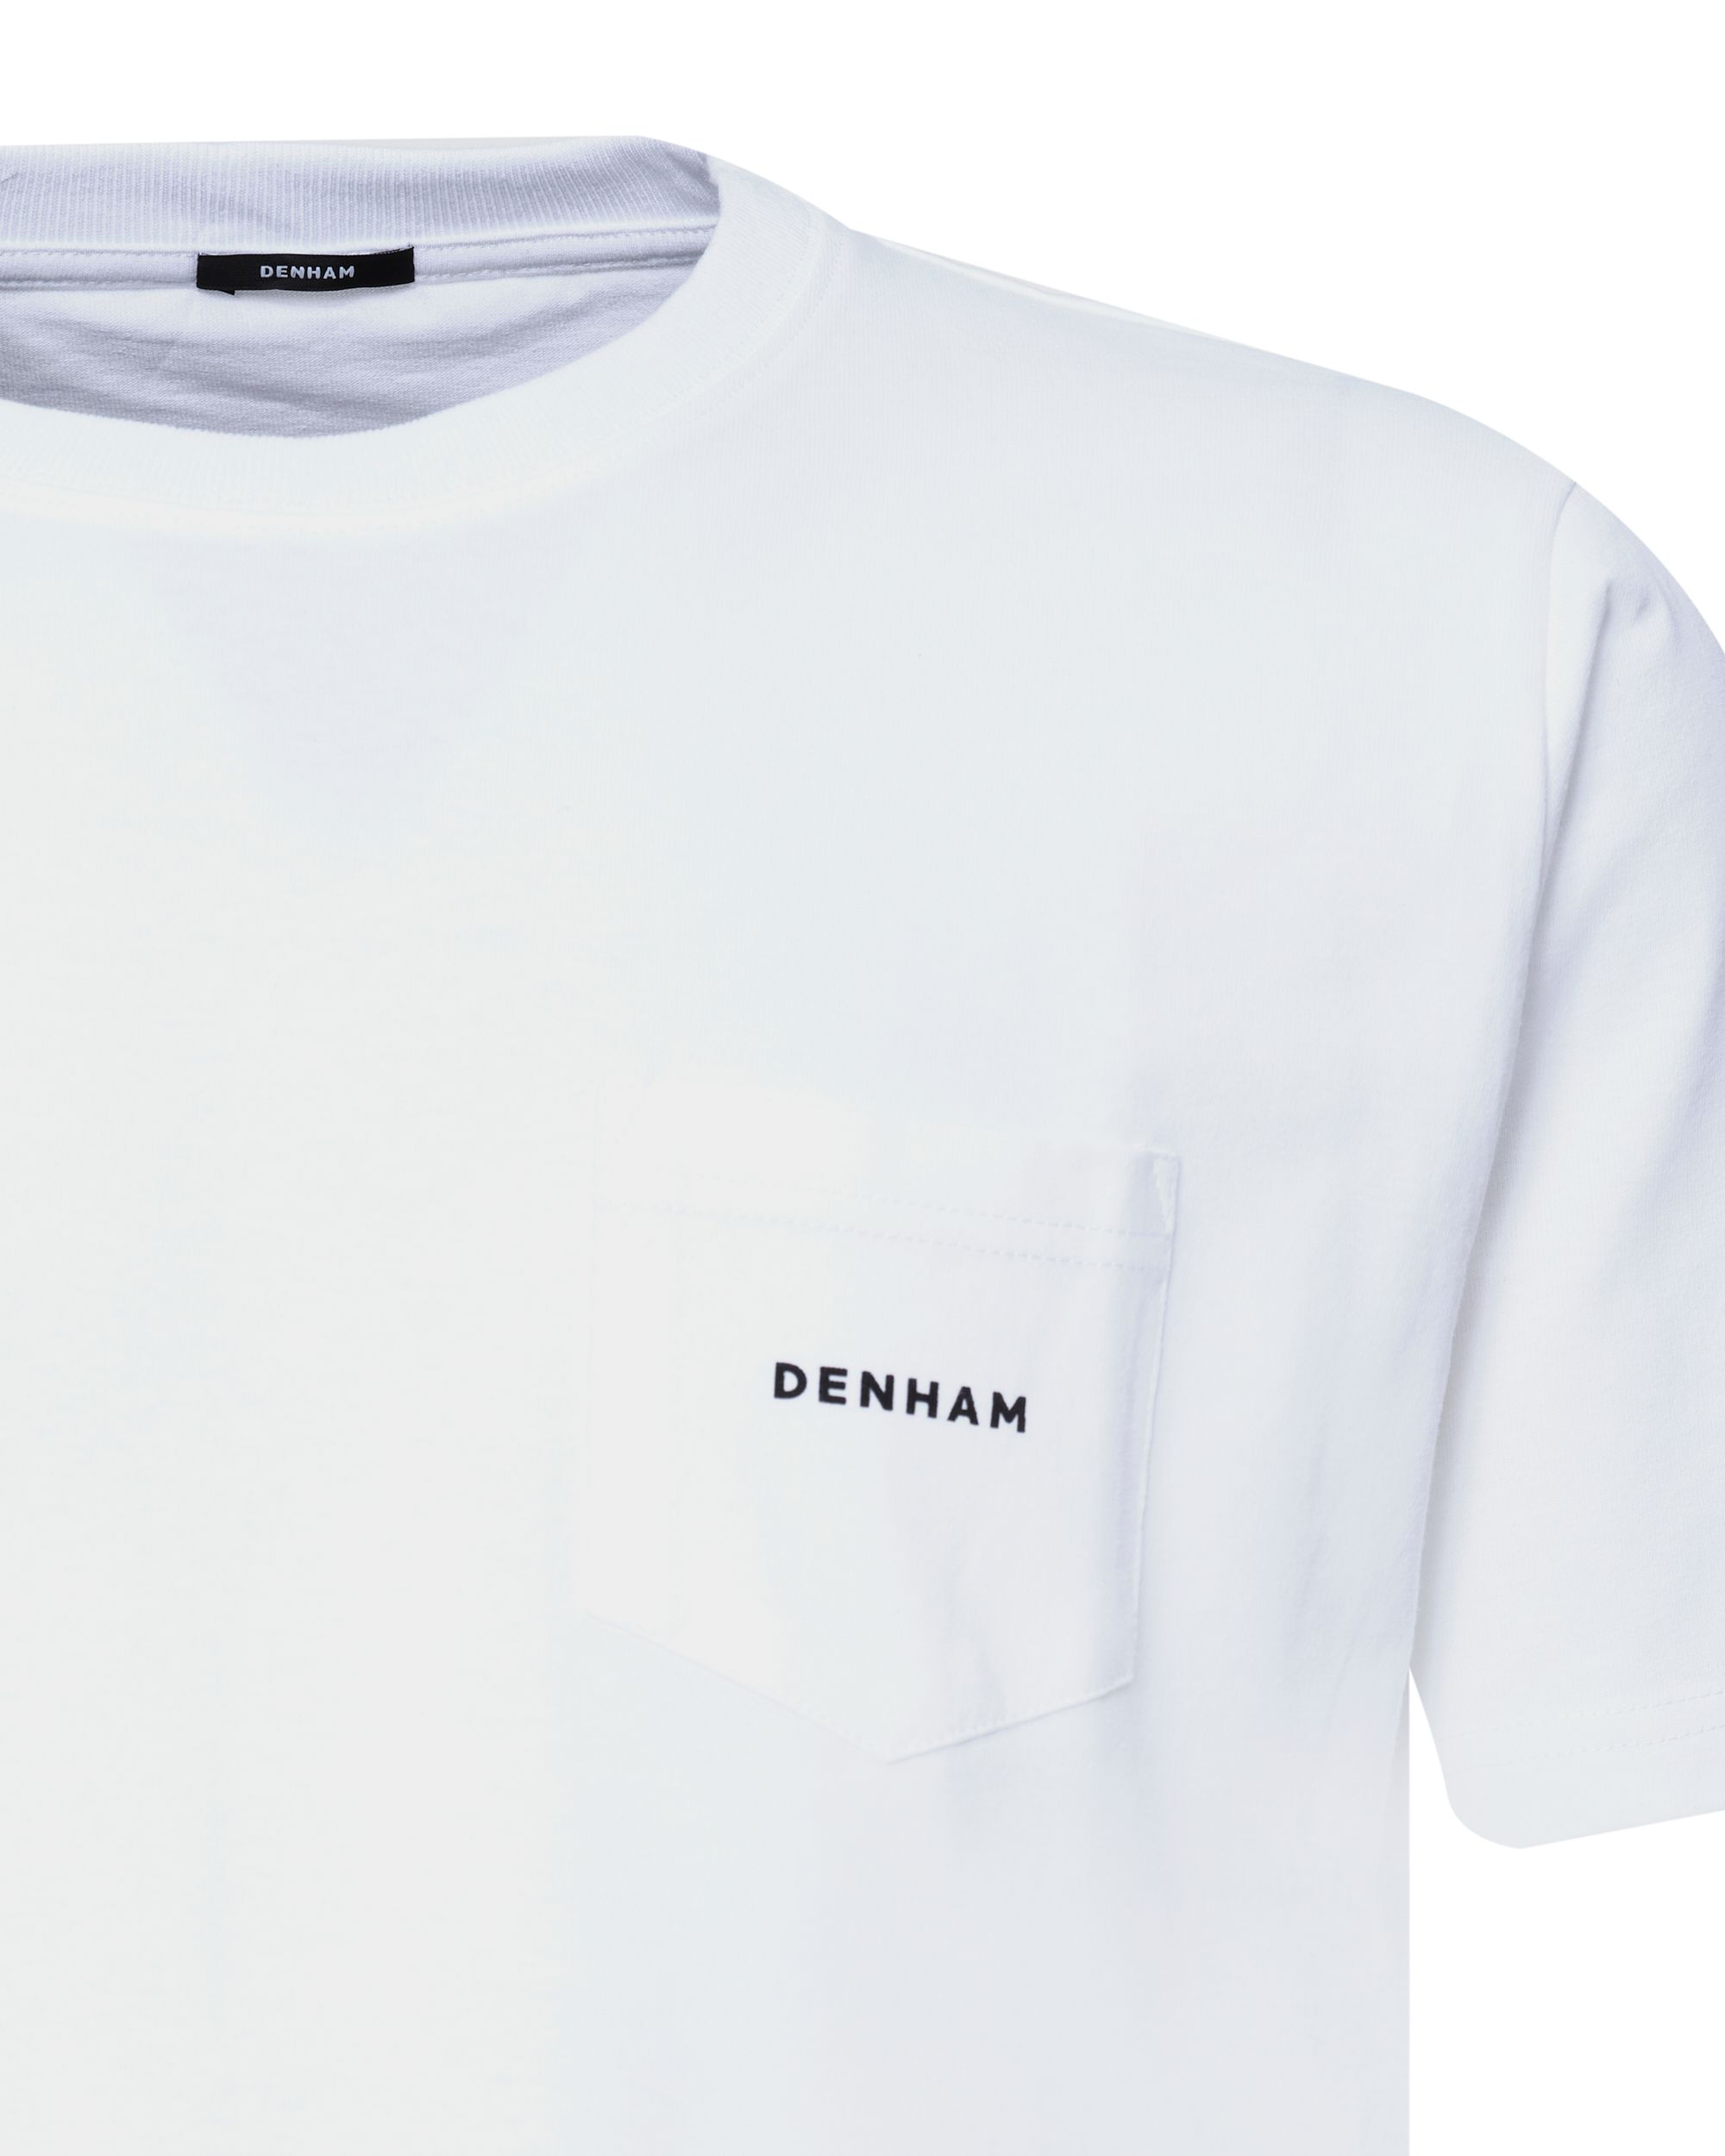 DENHAM Maya T-shirt KM Wit 080112-001-L